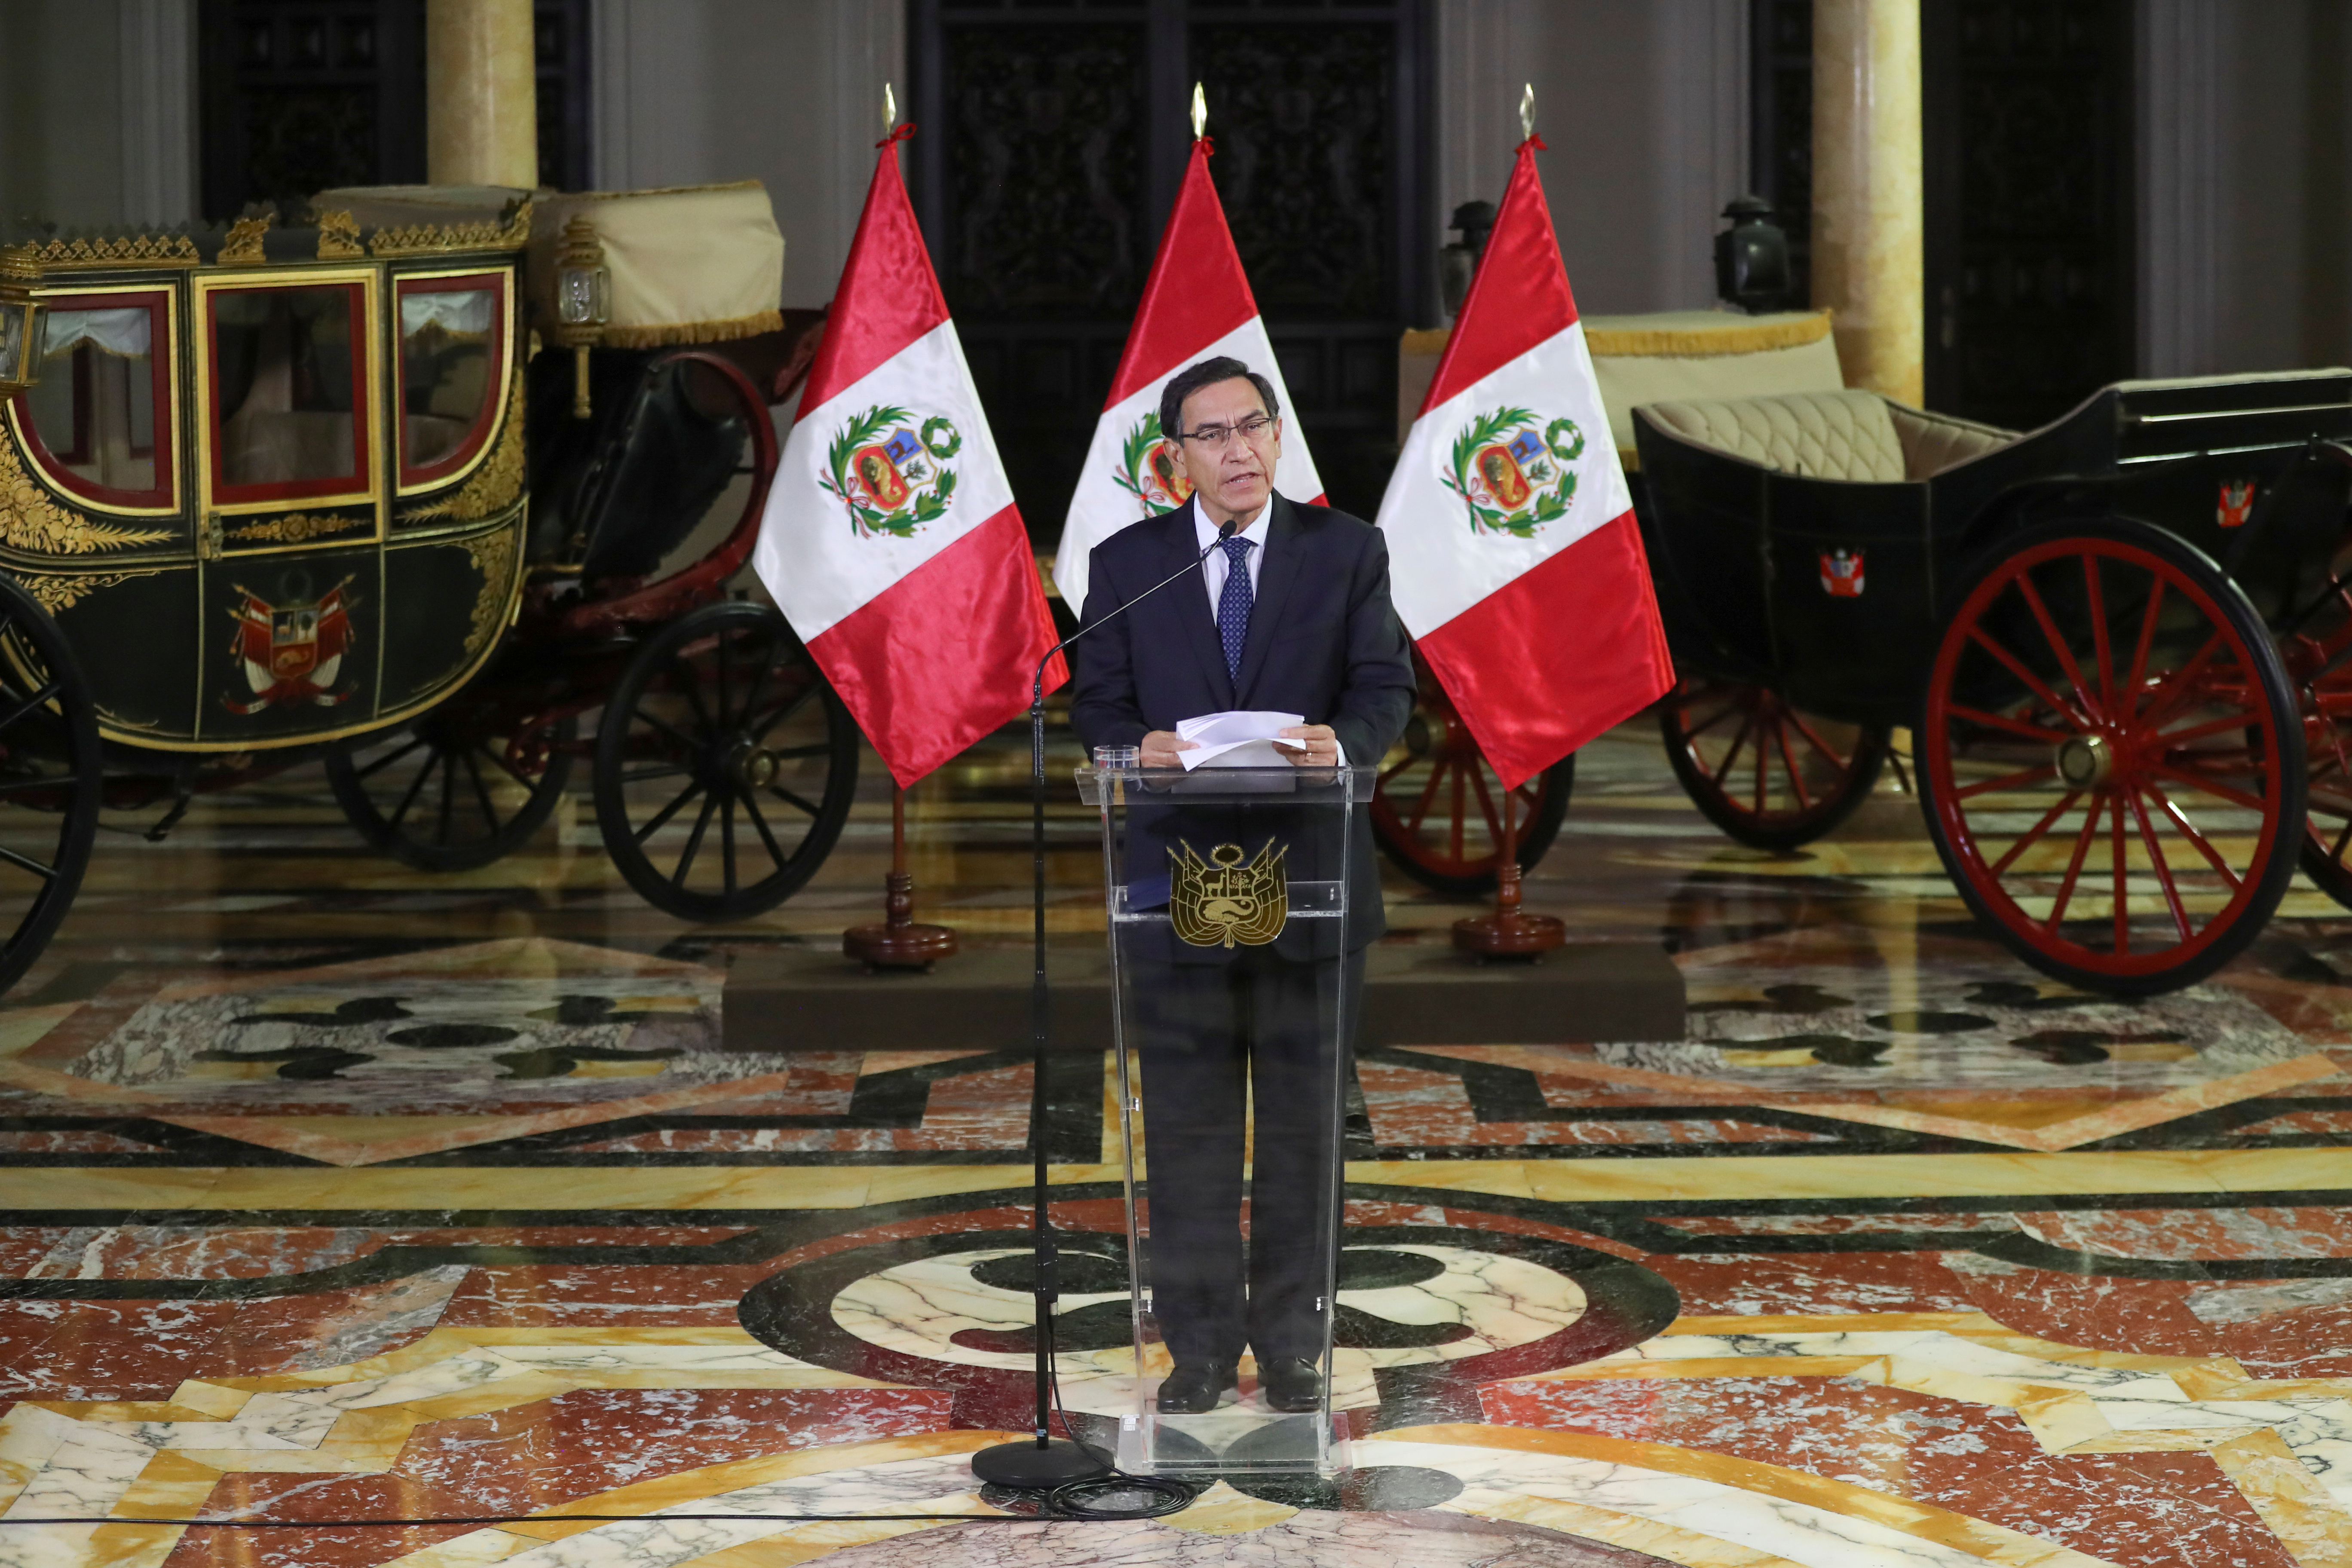 Encuesta reafirma abrumador respaldo a Vizcarra tras disolución del Congreso en Perú